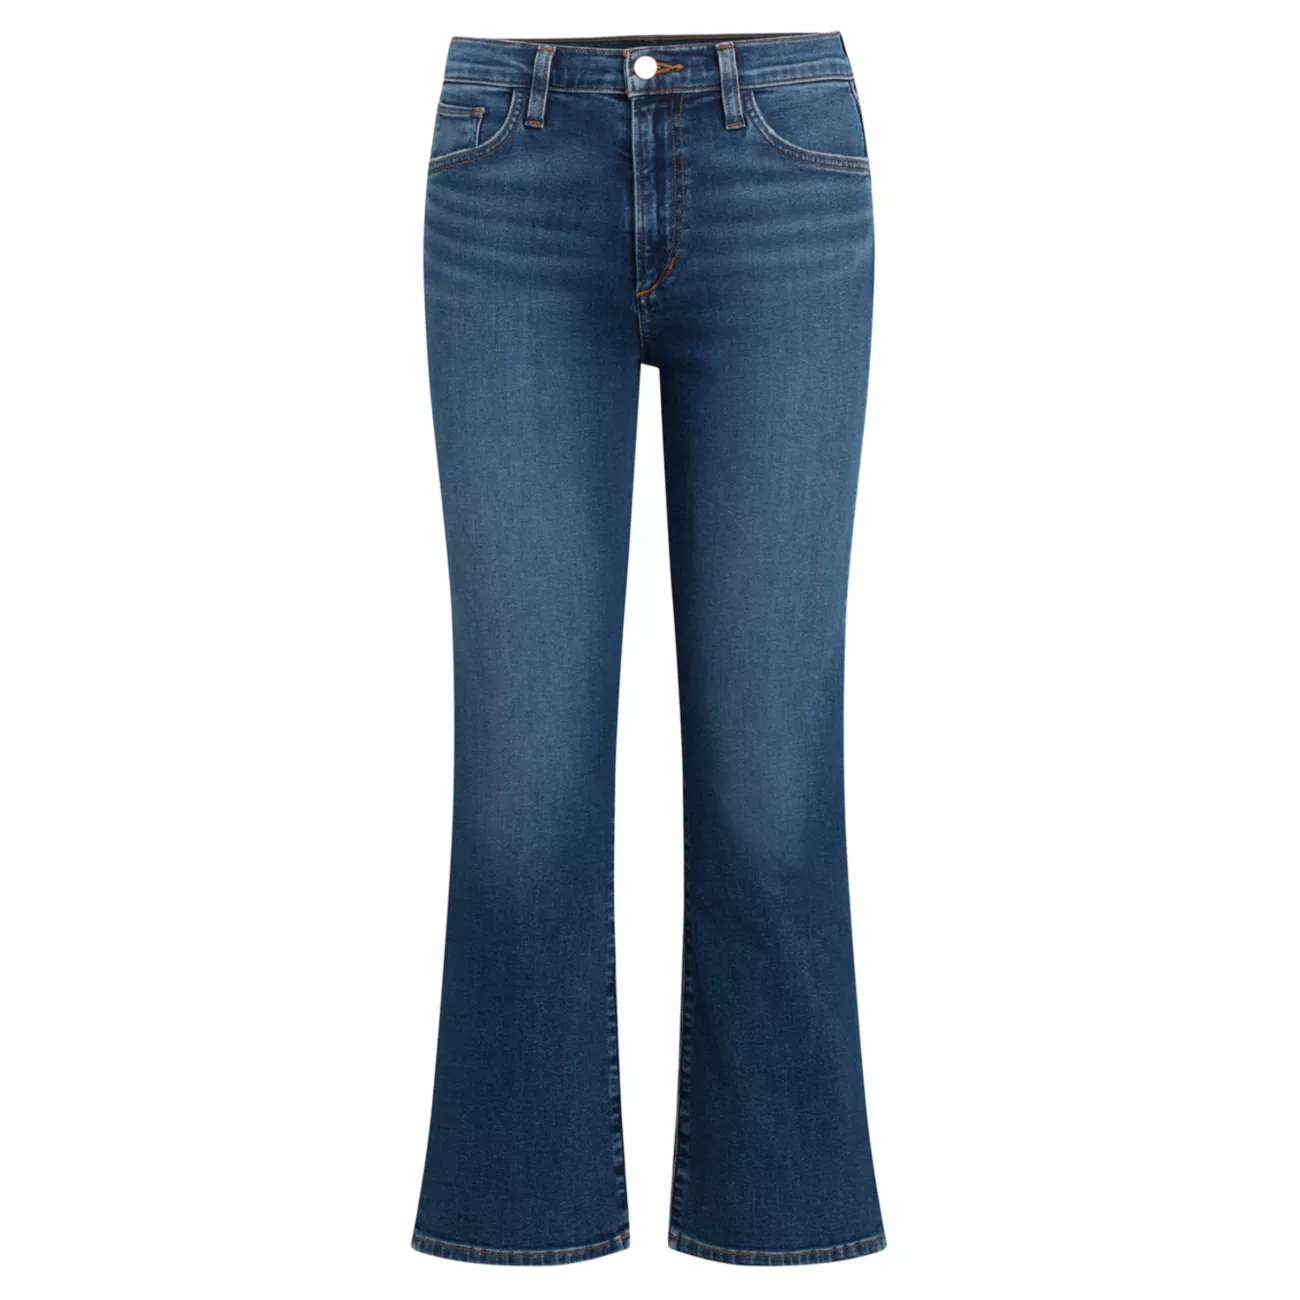 Укороченные джинсы Callie со средней посадкой Joe's Jeans